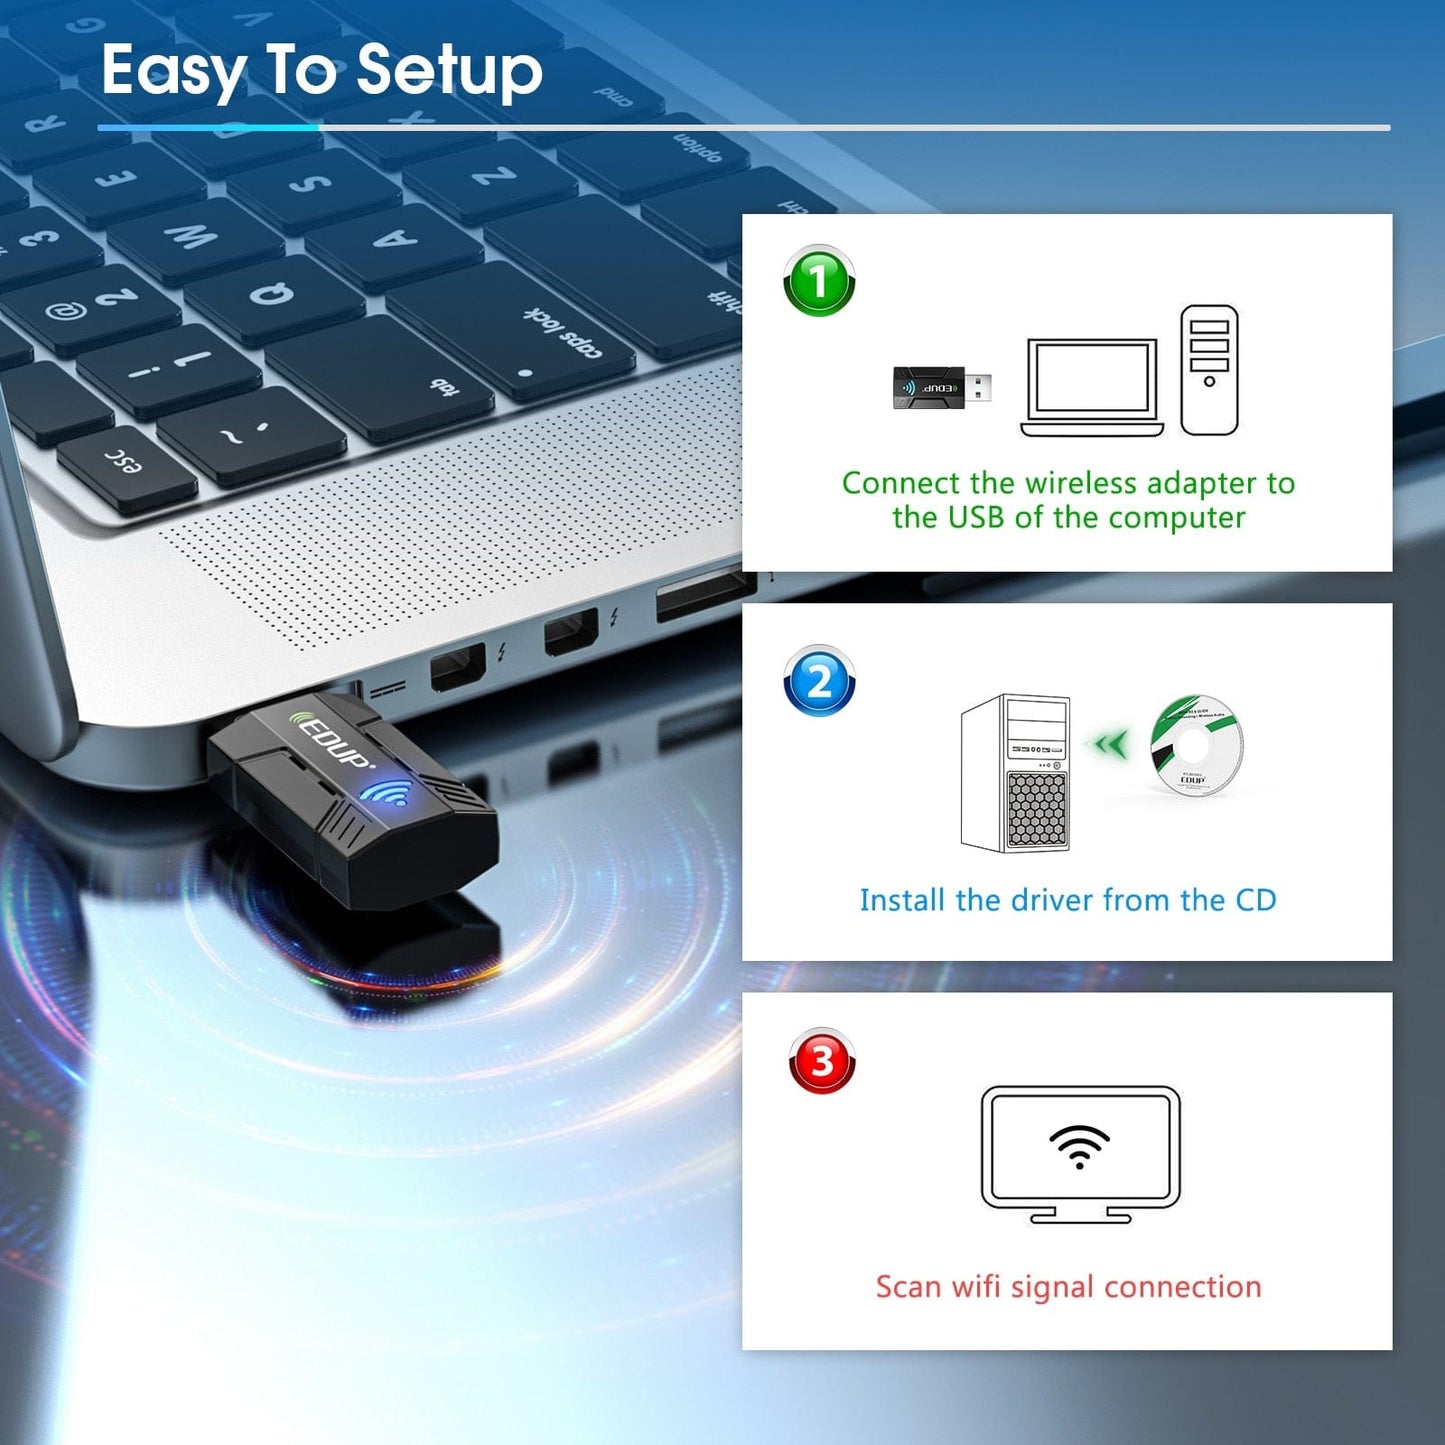 Mini adaptador WiFi EDUP de 1300Mbps, tarjeta de red inalámbrica USB, banda Dual, 2,4G, 5G, 802.11ac, adaptador Lan de disipador alto para ordenador PC